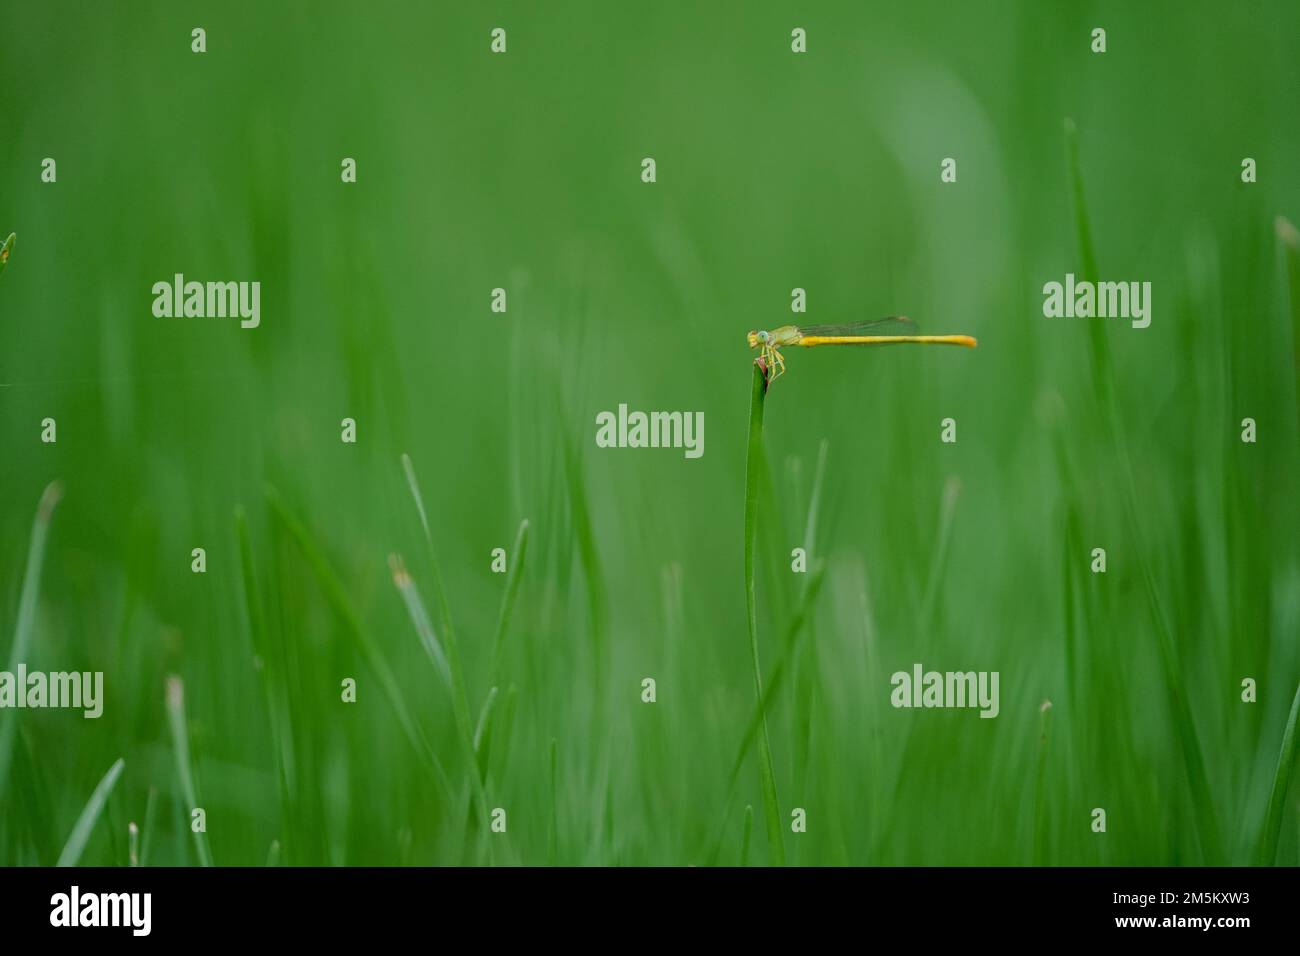 Pequeña libélula amarilla que se sienta en el suelo del parque del césped verde de la hierba, primer plano del tiro macro de la mosca del dragón que se sienta en la hoja verde de la hierba, foto de primer plano de Foto de stock